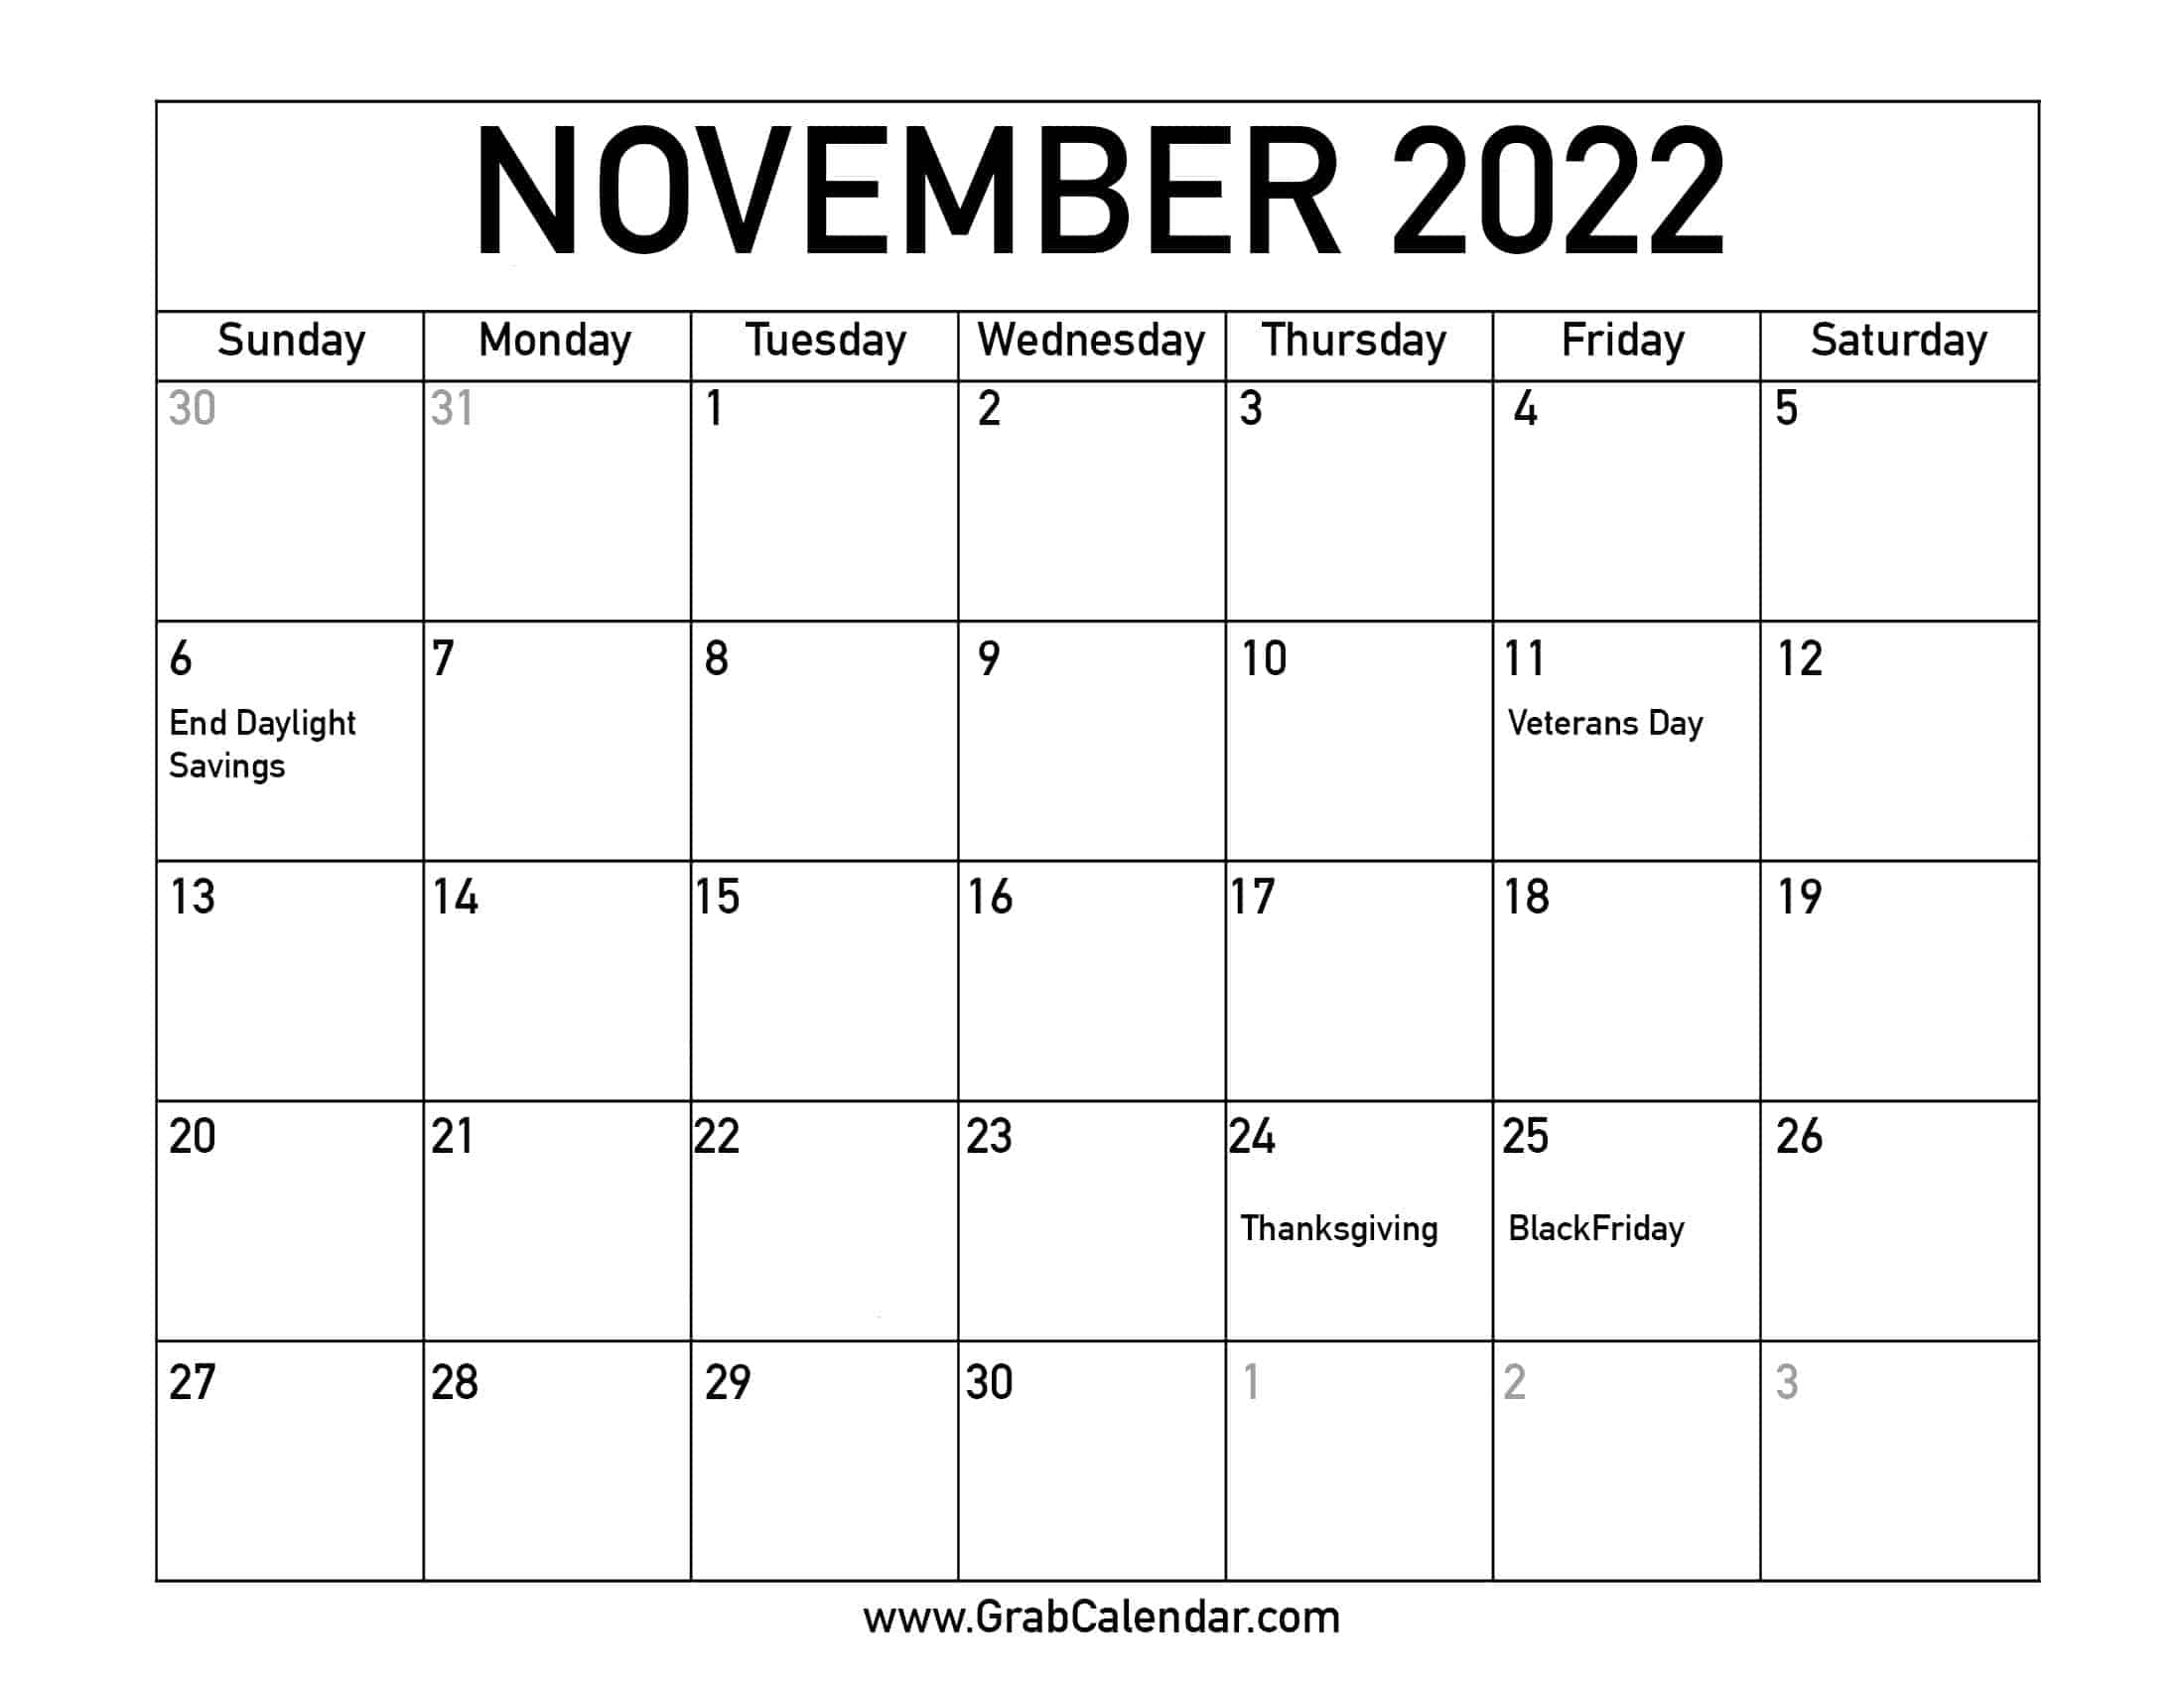 Novemeber 2022 Calendar Printable November 2022 Calendar